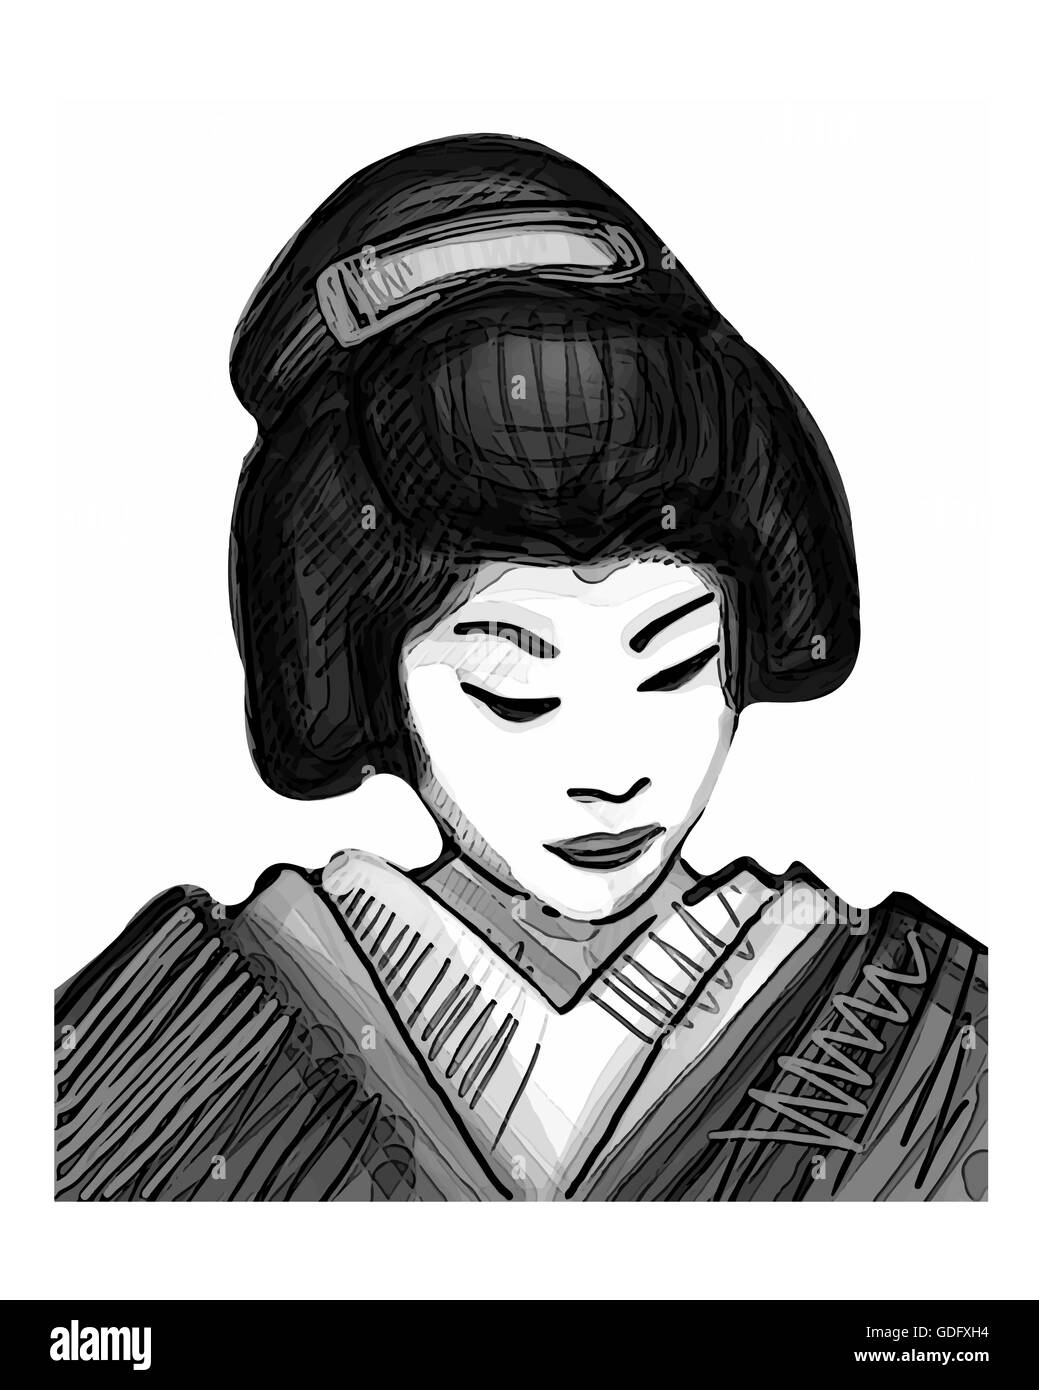 Hand drawn vector illustration ou dessin d'une geisha japonaise traditionnelle Banque D'Images